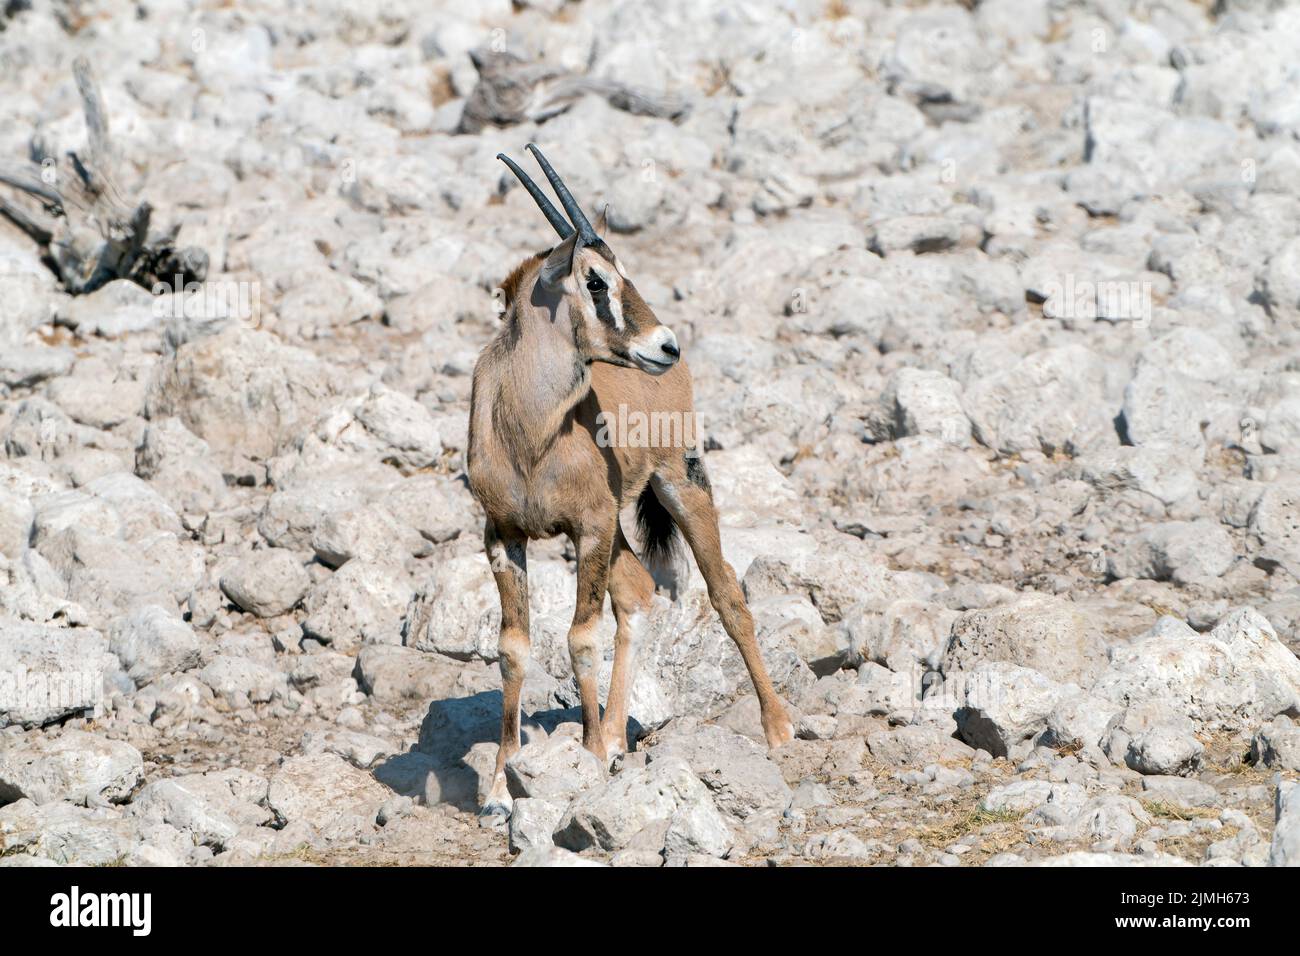 gemsbok ou oryx sud-africain, Oryx gazella, veau unique sur terrain rocheux, Parc national d'Etosha, Namibie Banque D'Images